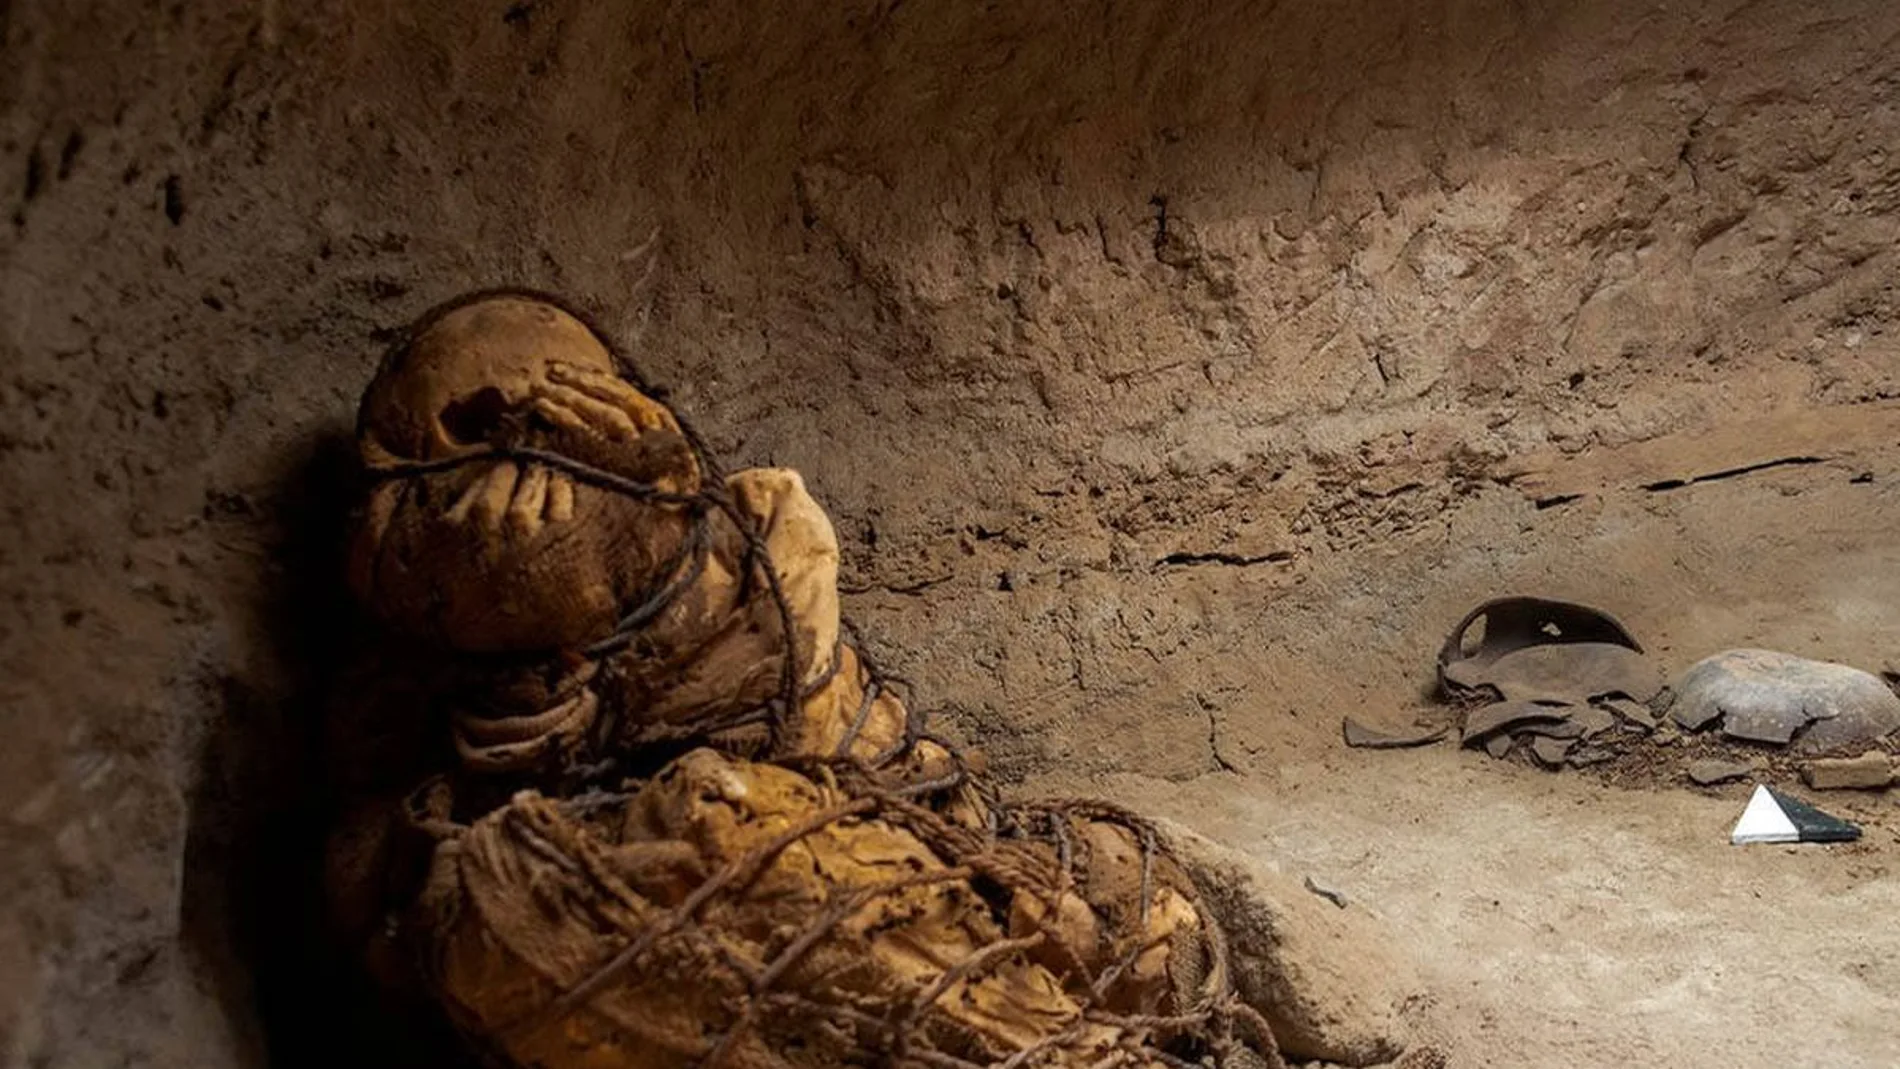 La momia ha sido hallada en el interior de una cavidad funeraria